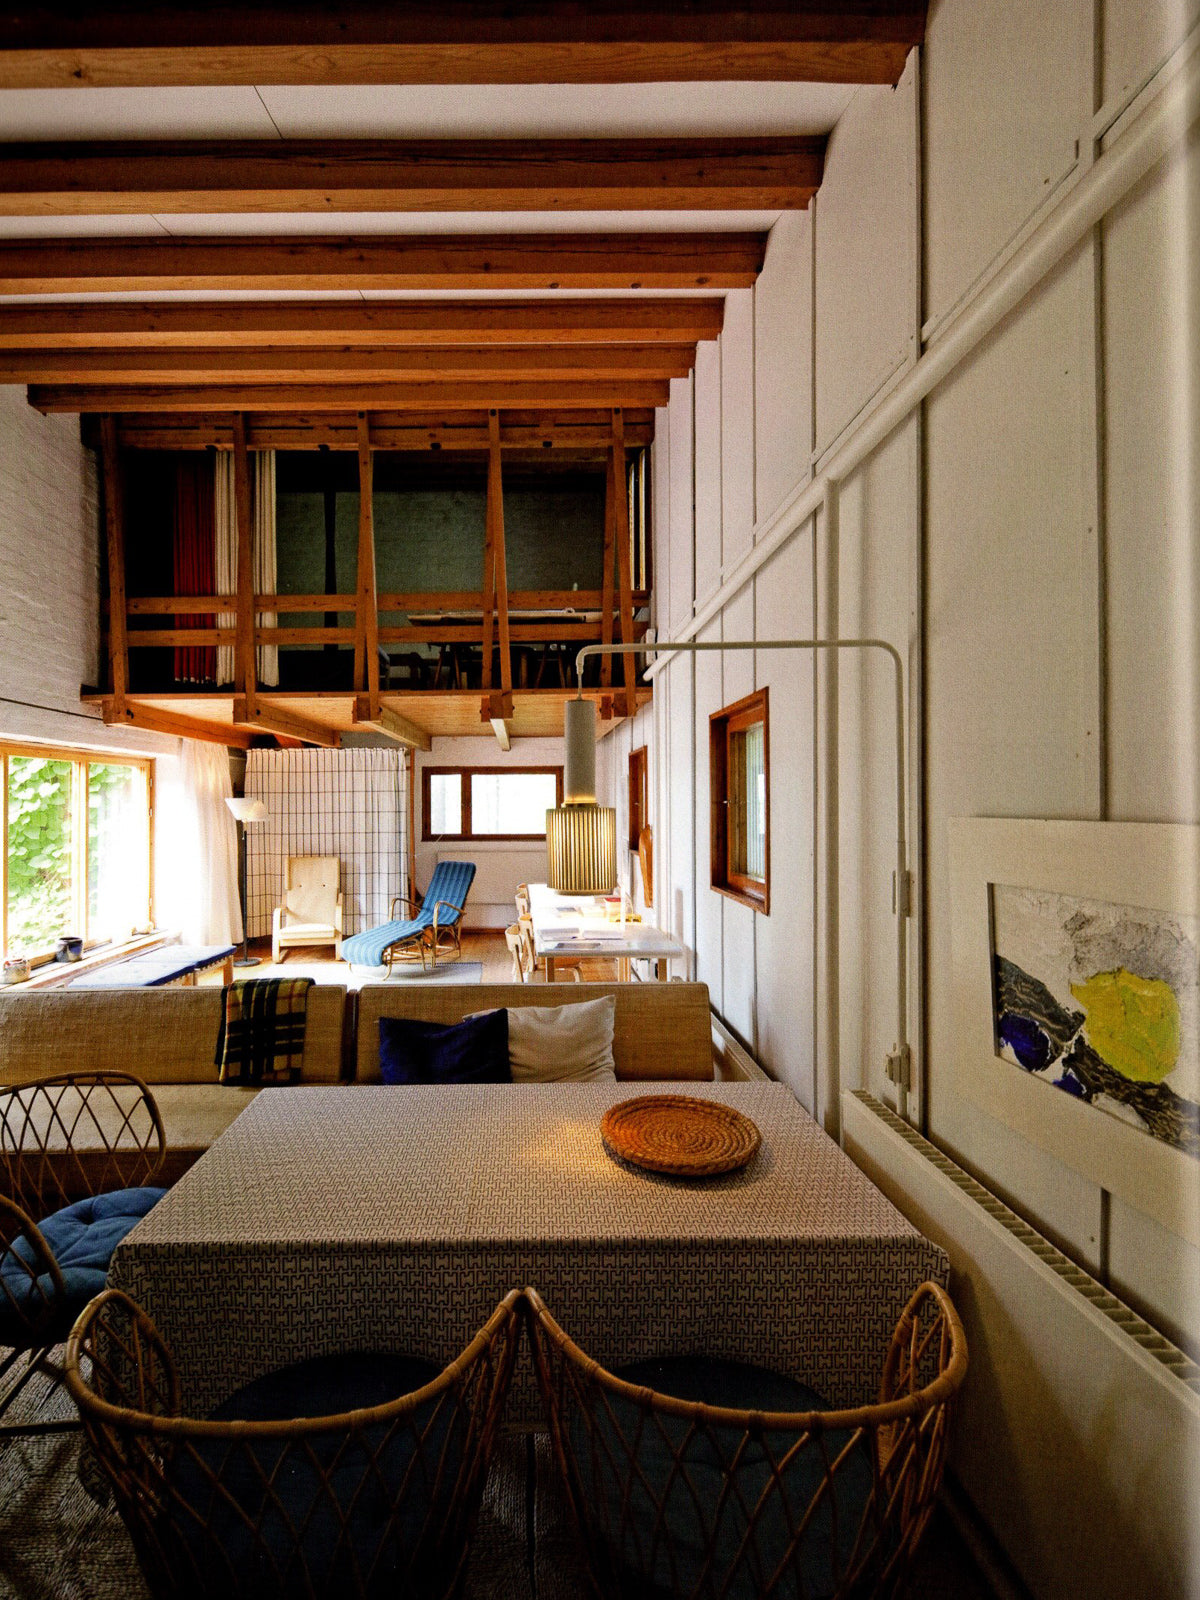 Alvar Aalto Houses – Materials and Details, a+u